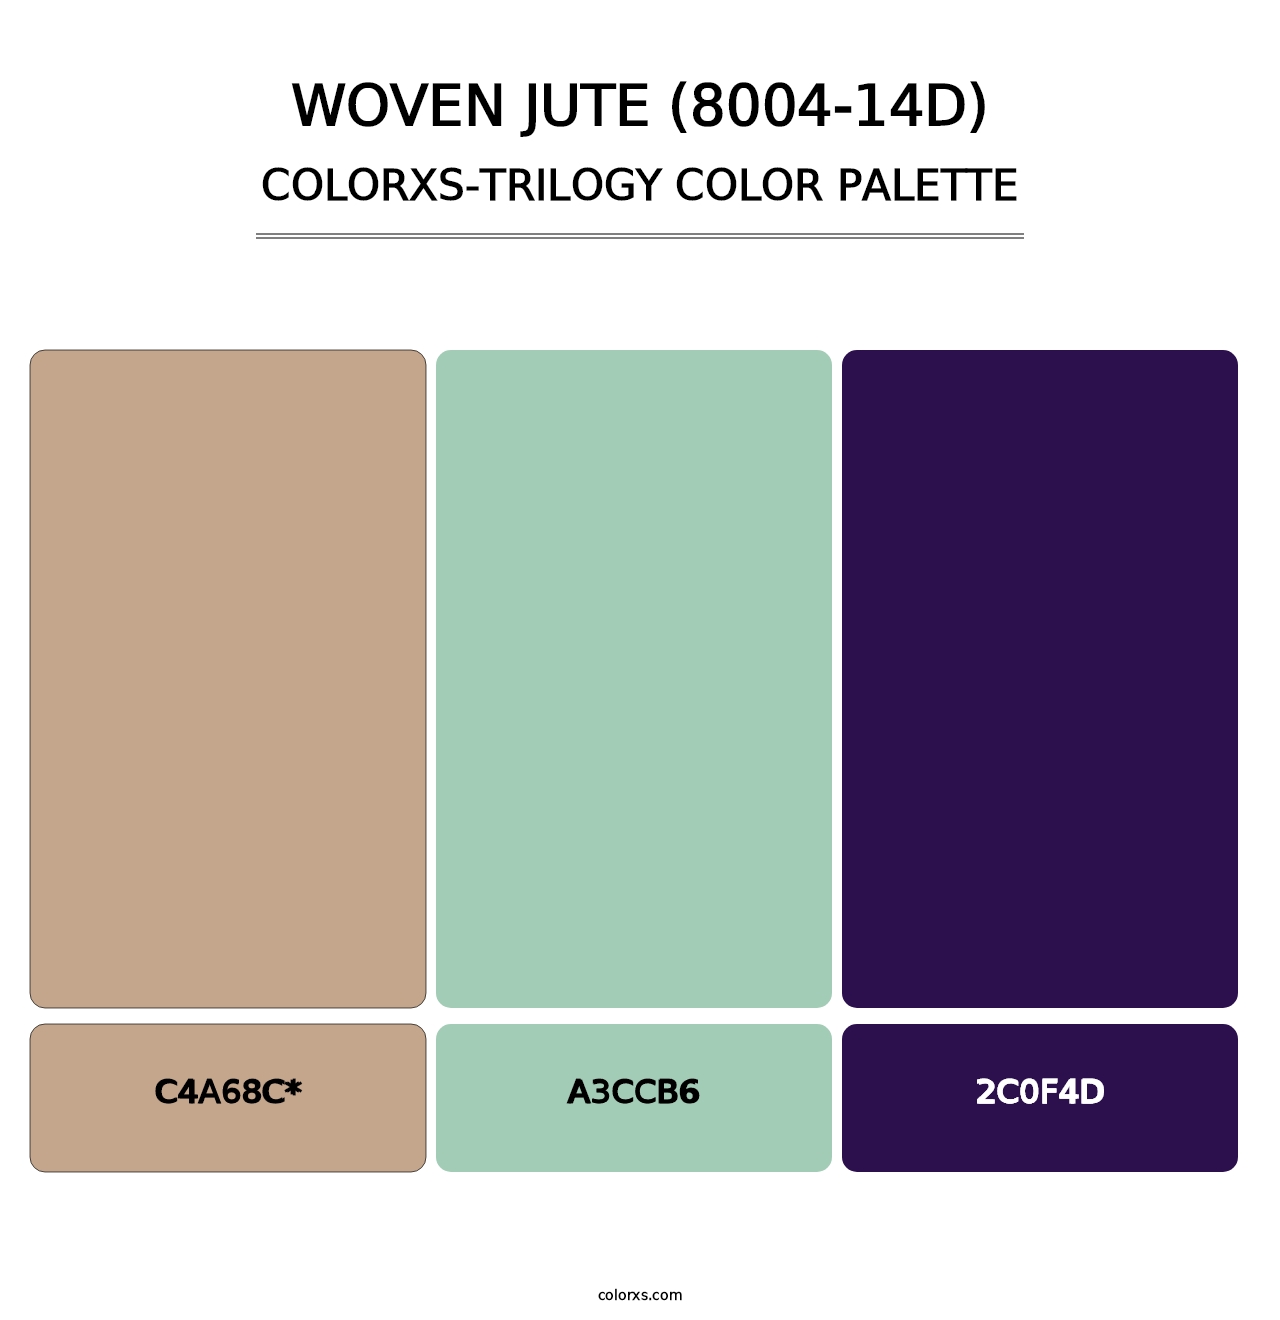 Woven Jute (8004-14D) - Colorxs Trilogy Palette